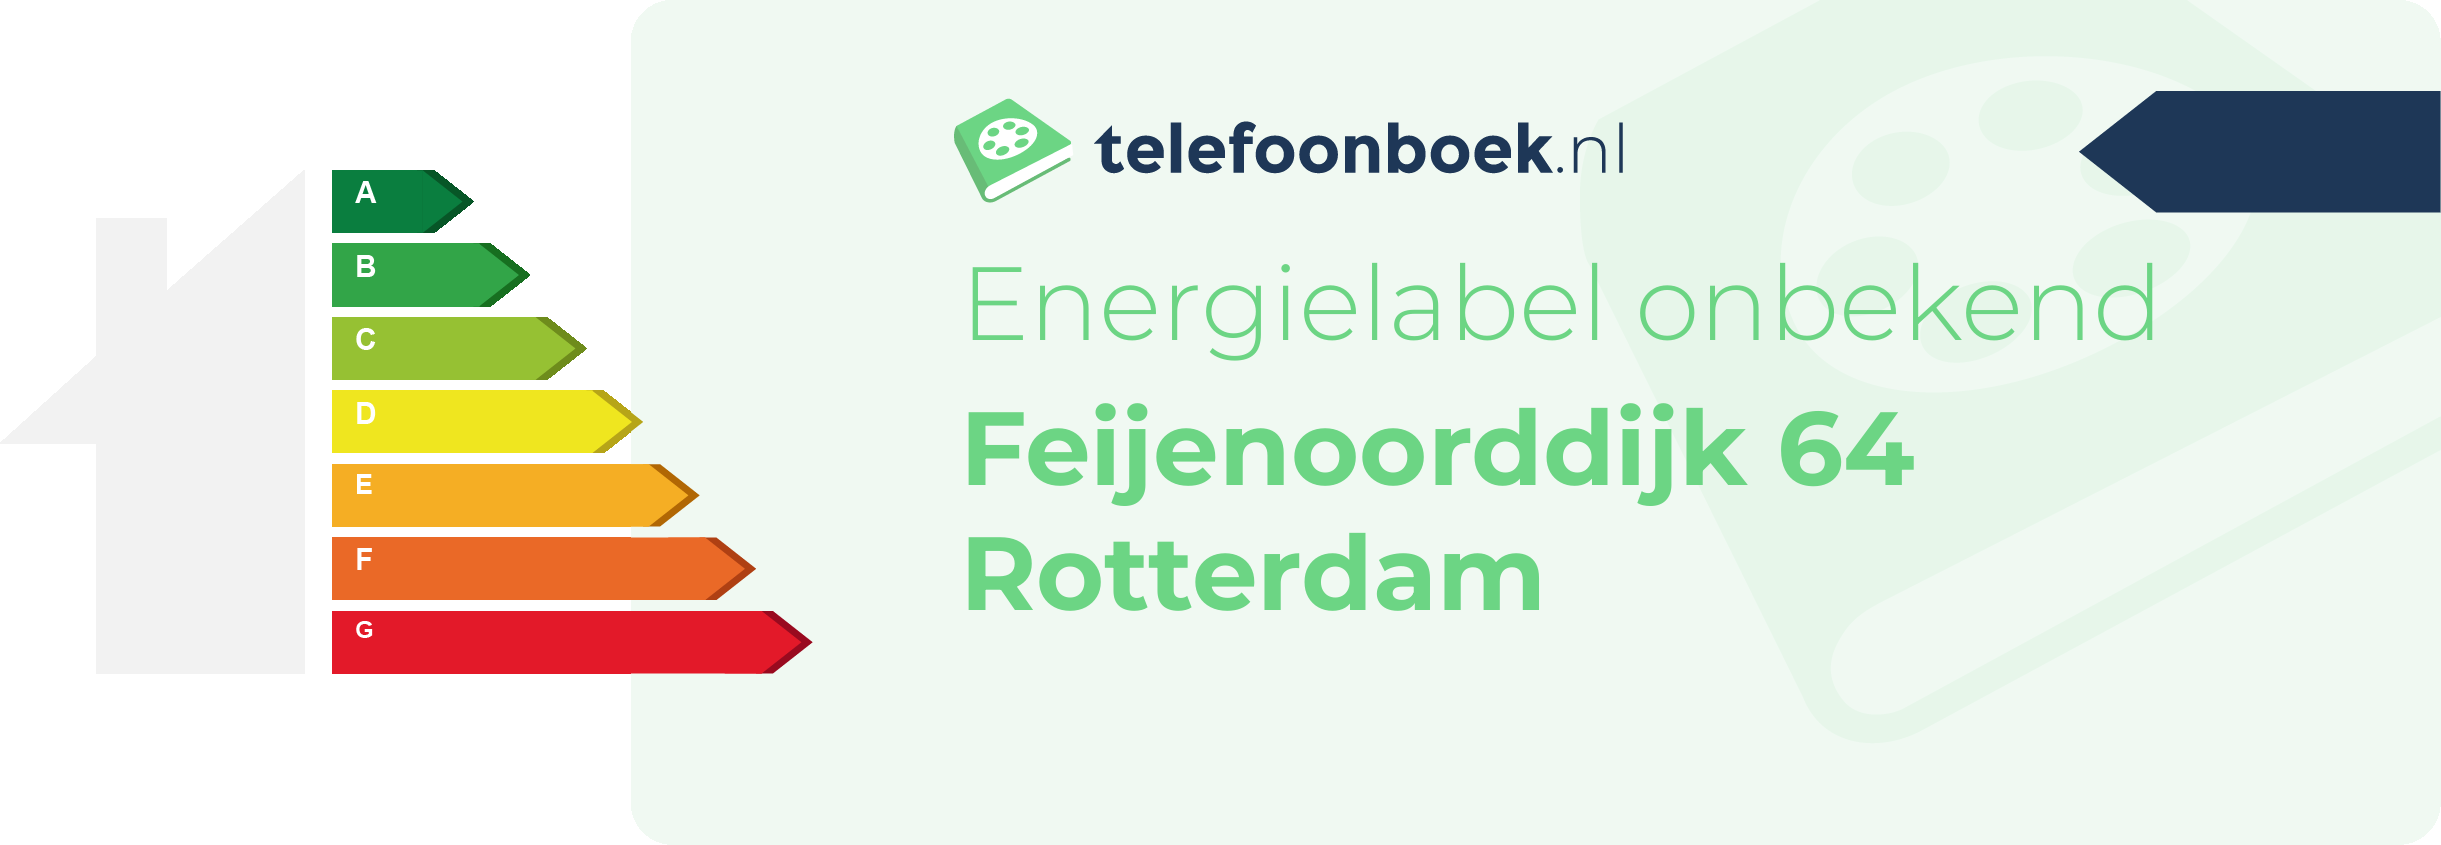 Energielabel Feijenoorddijk 64 Rotterdam